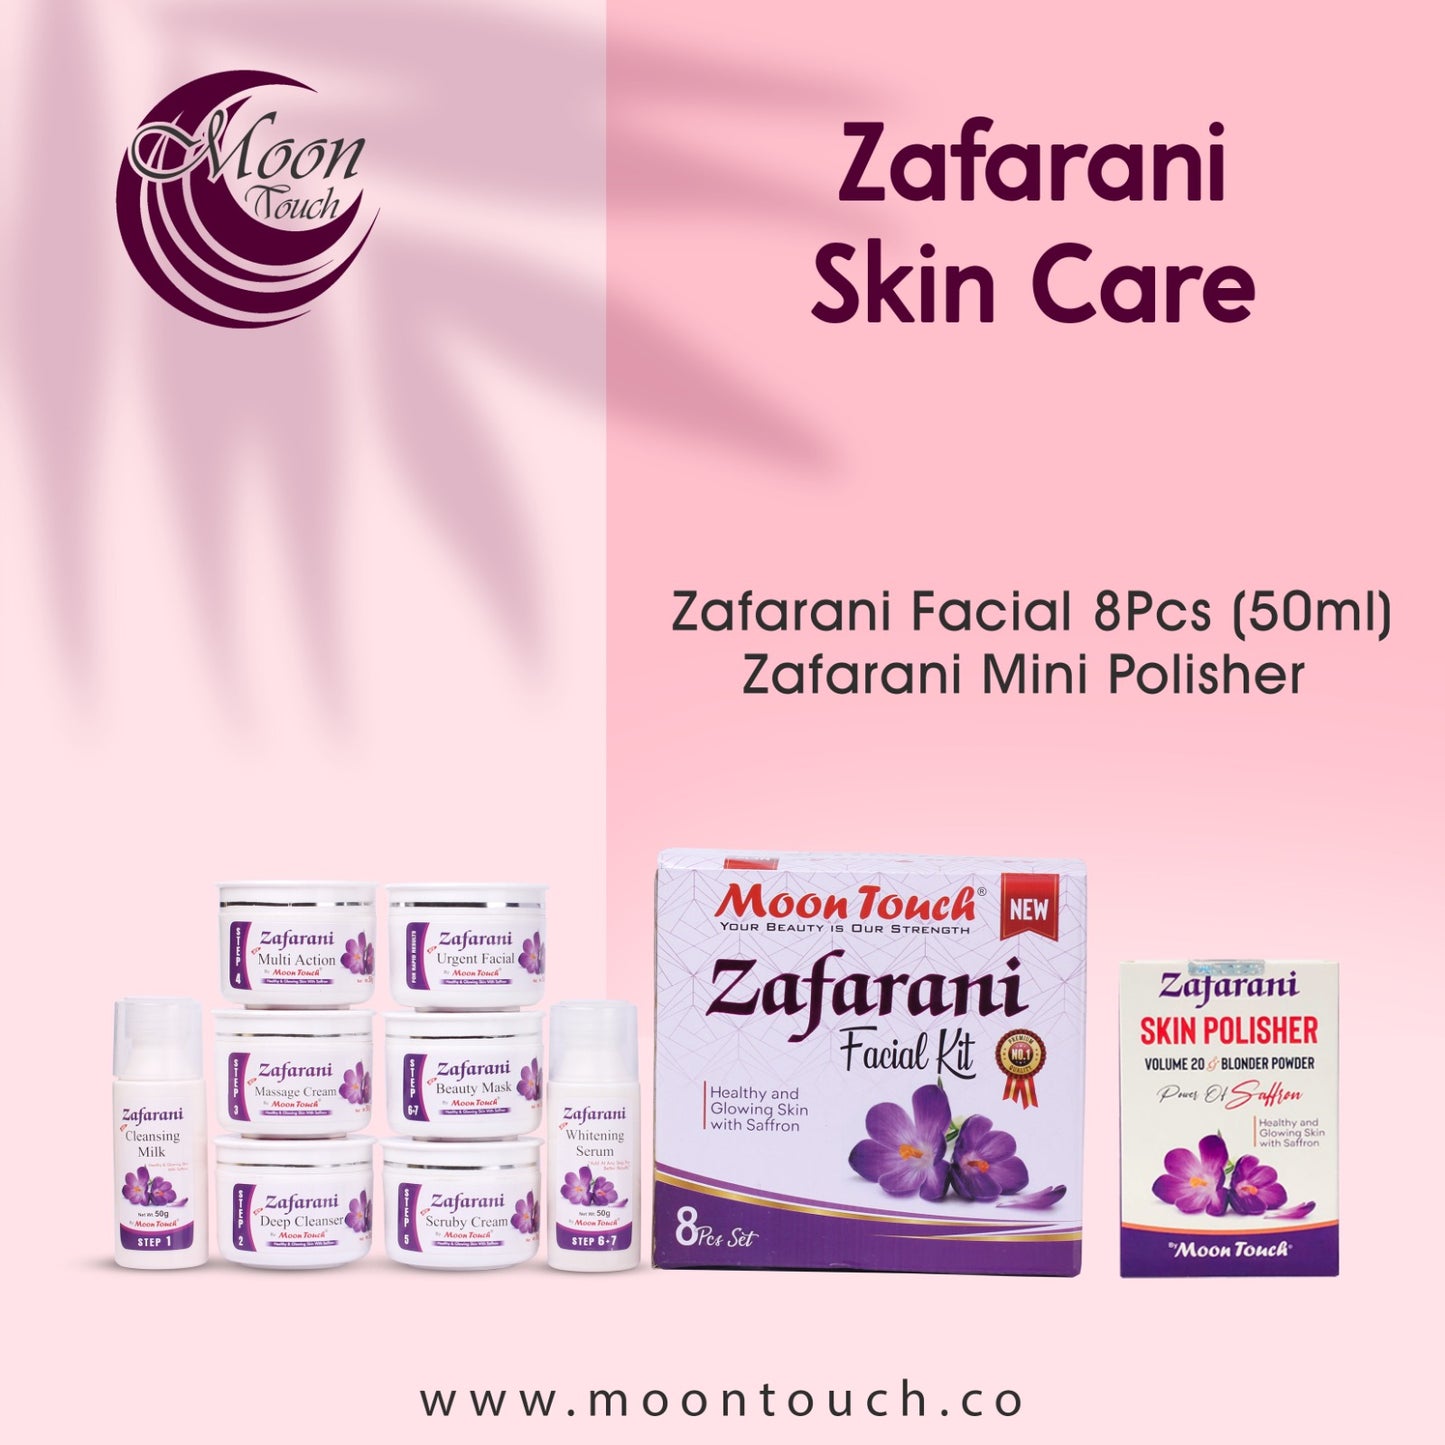 Zafarani Facial + Skin Polisher - Moon Touch